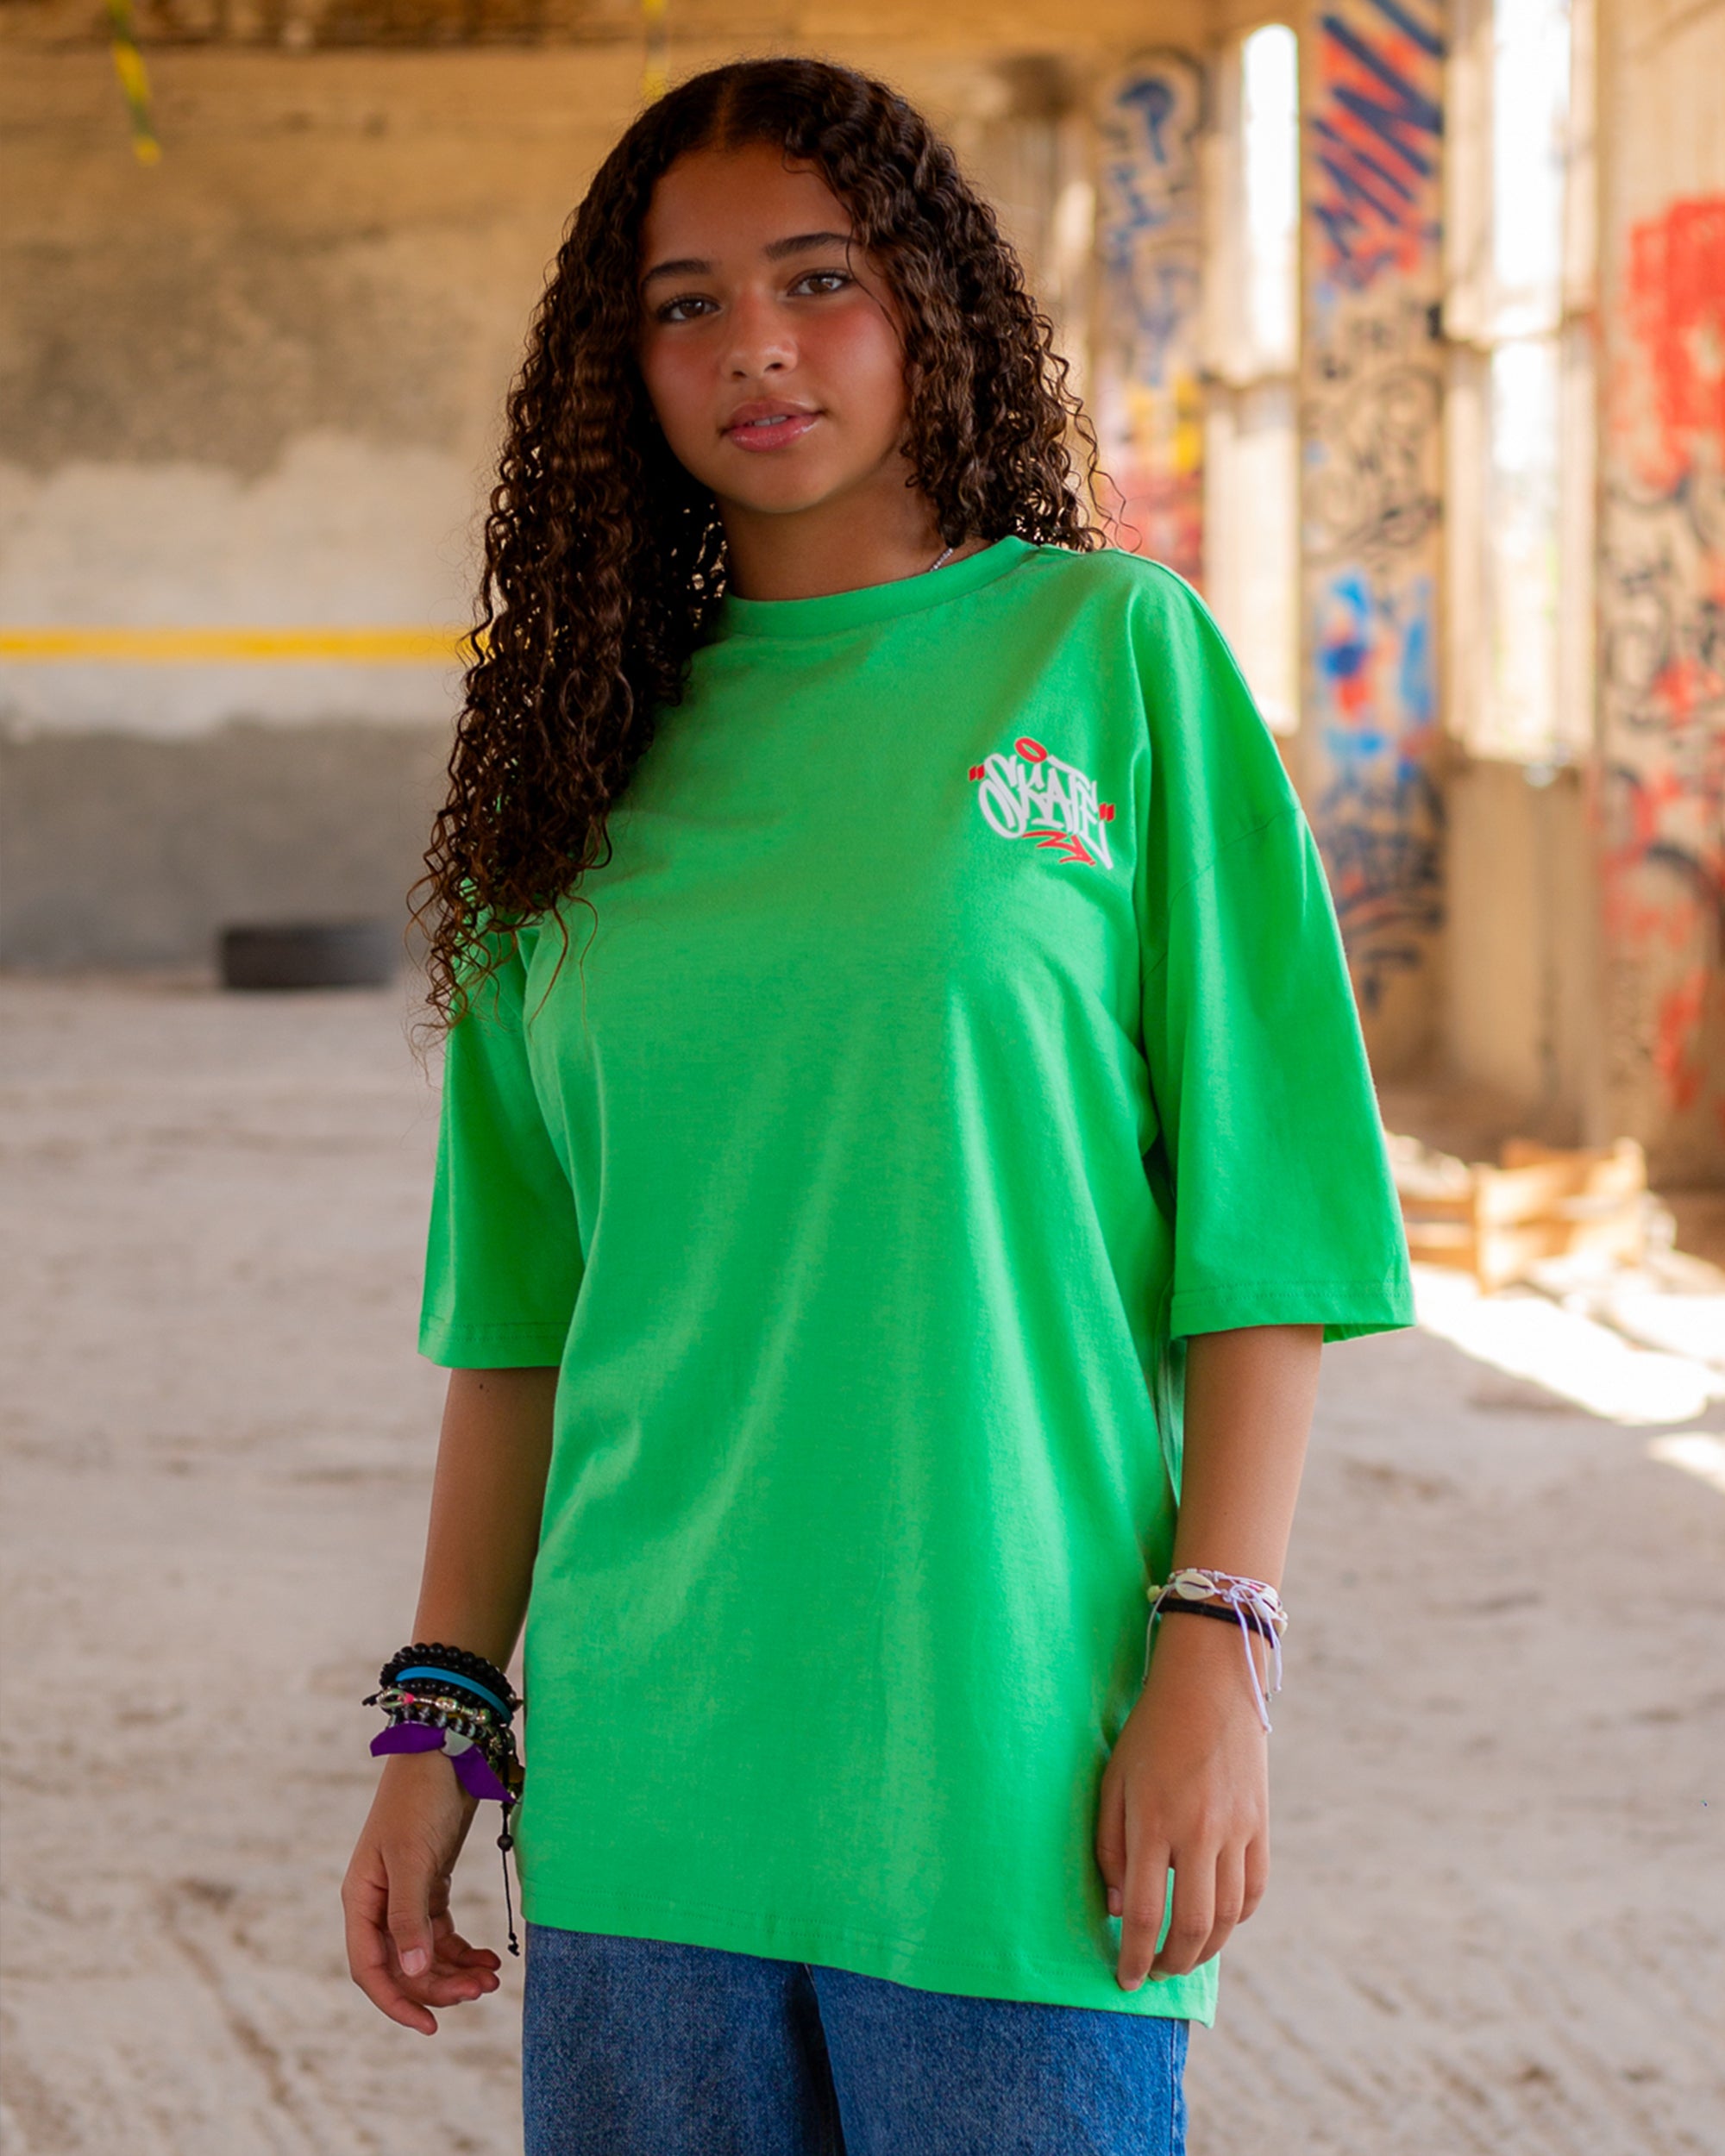 Skate Unisex Oversized SS T-Shirt - Apple Green